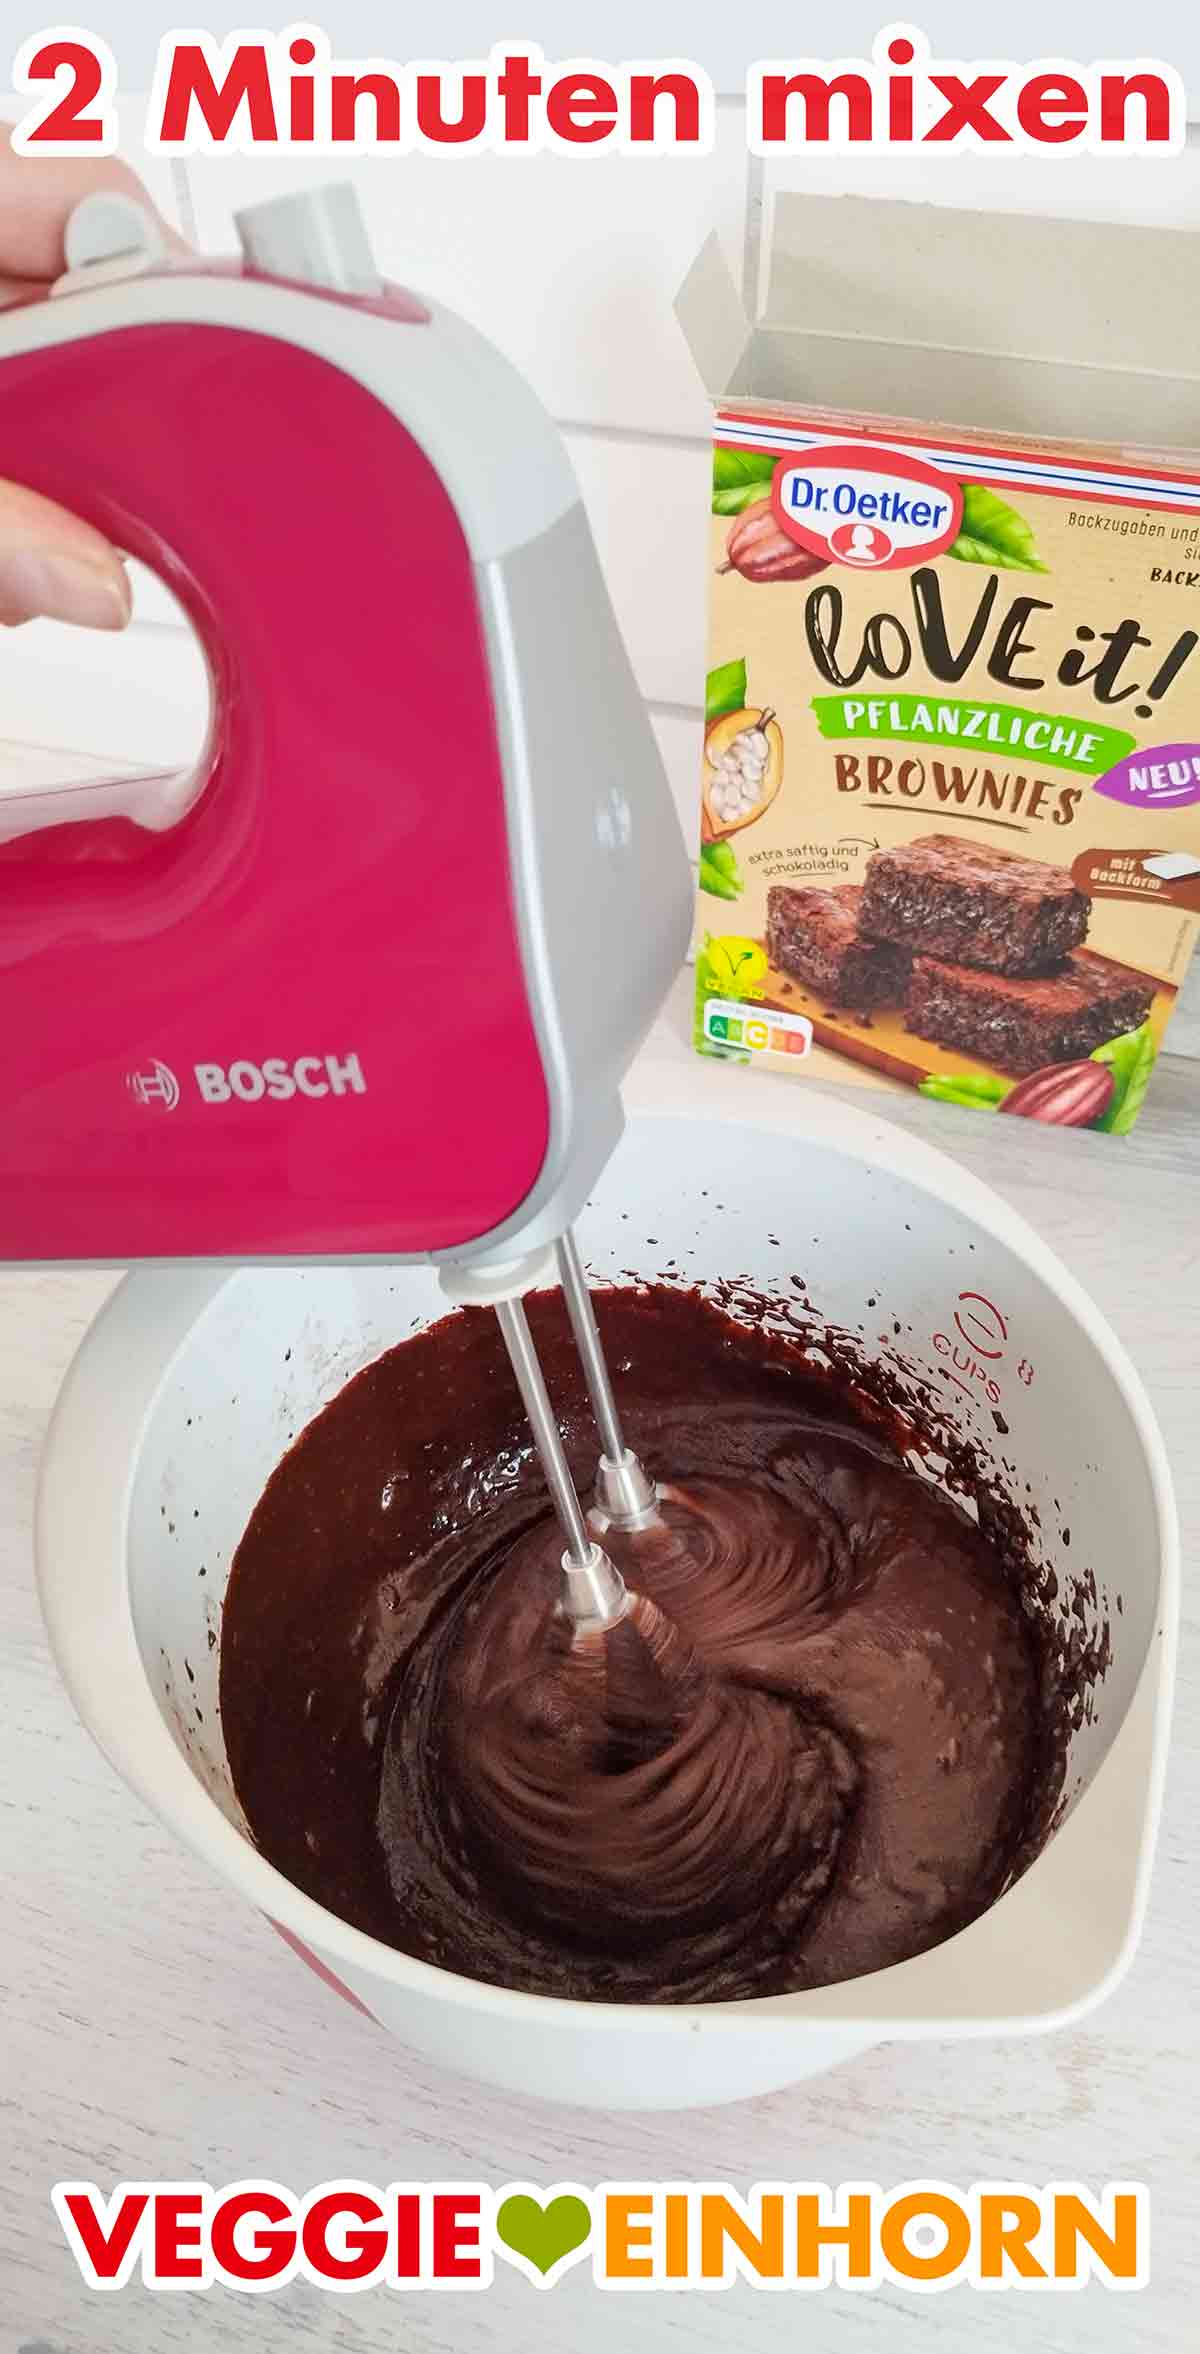 Der vegane Brownie Teig der Backmischung wird mit dem Mixer gemixt.